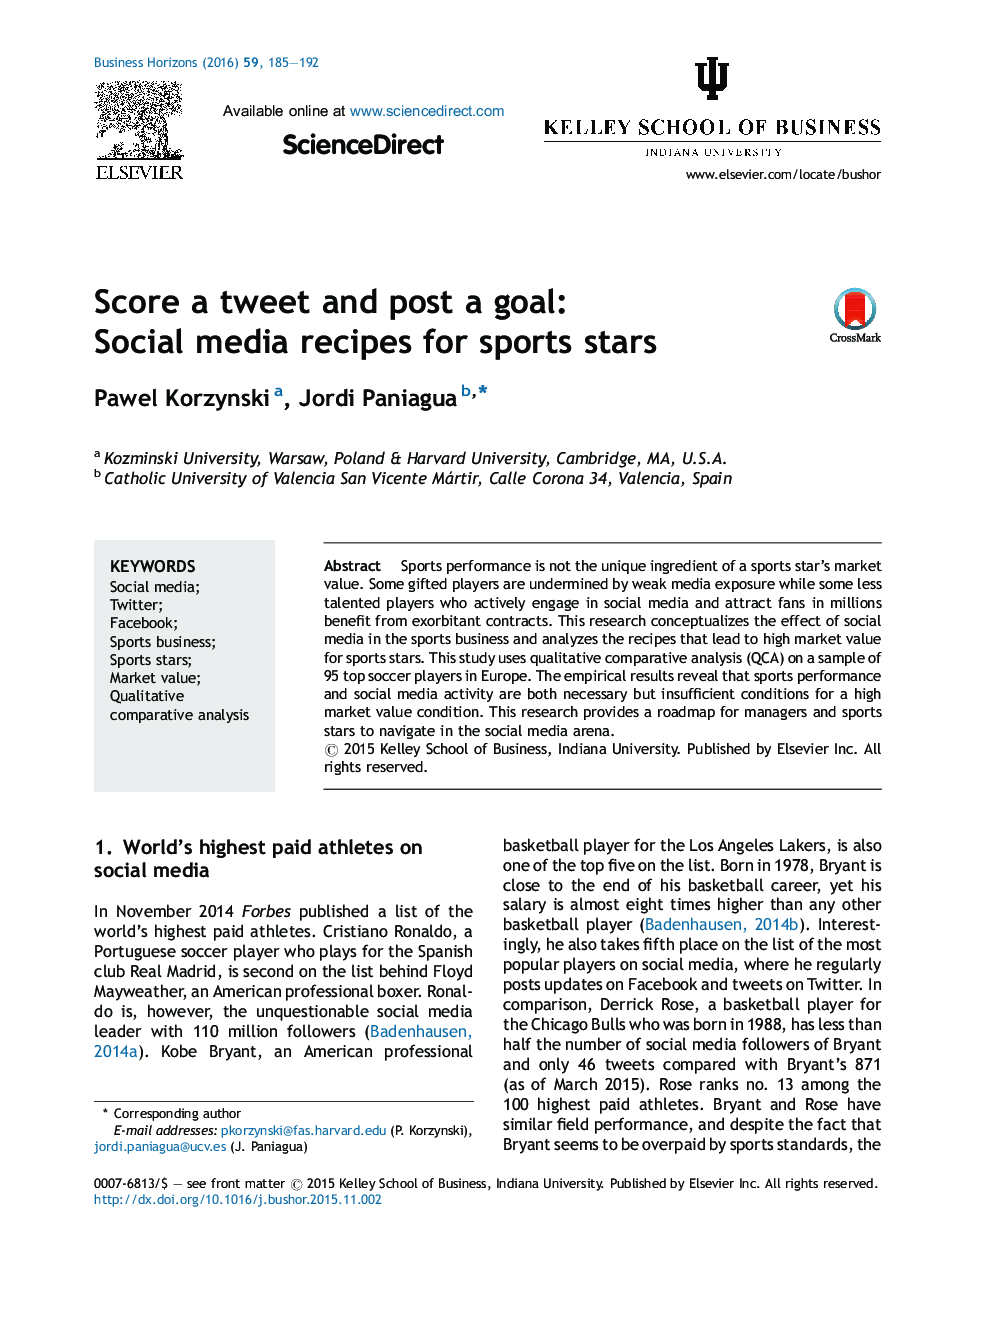 نمره به یک توئیت و ارسال یک گل: دستورالعمل های رسانه های اجتماعی برای ستاره های ورزشی